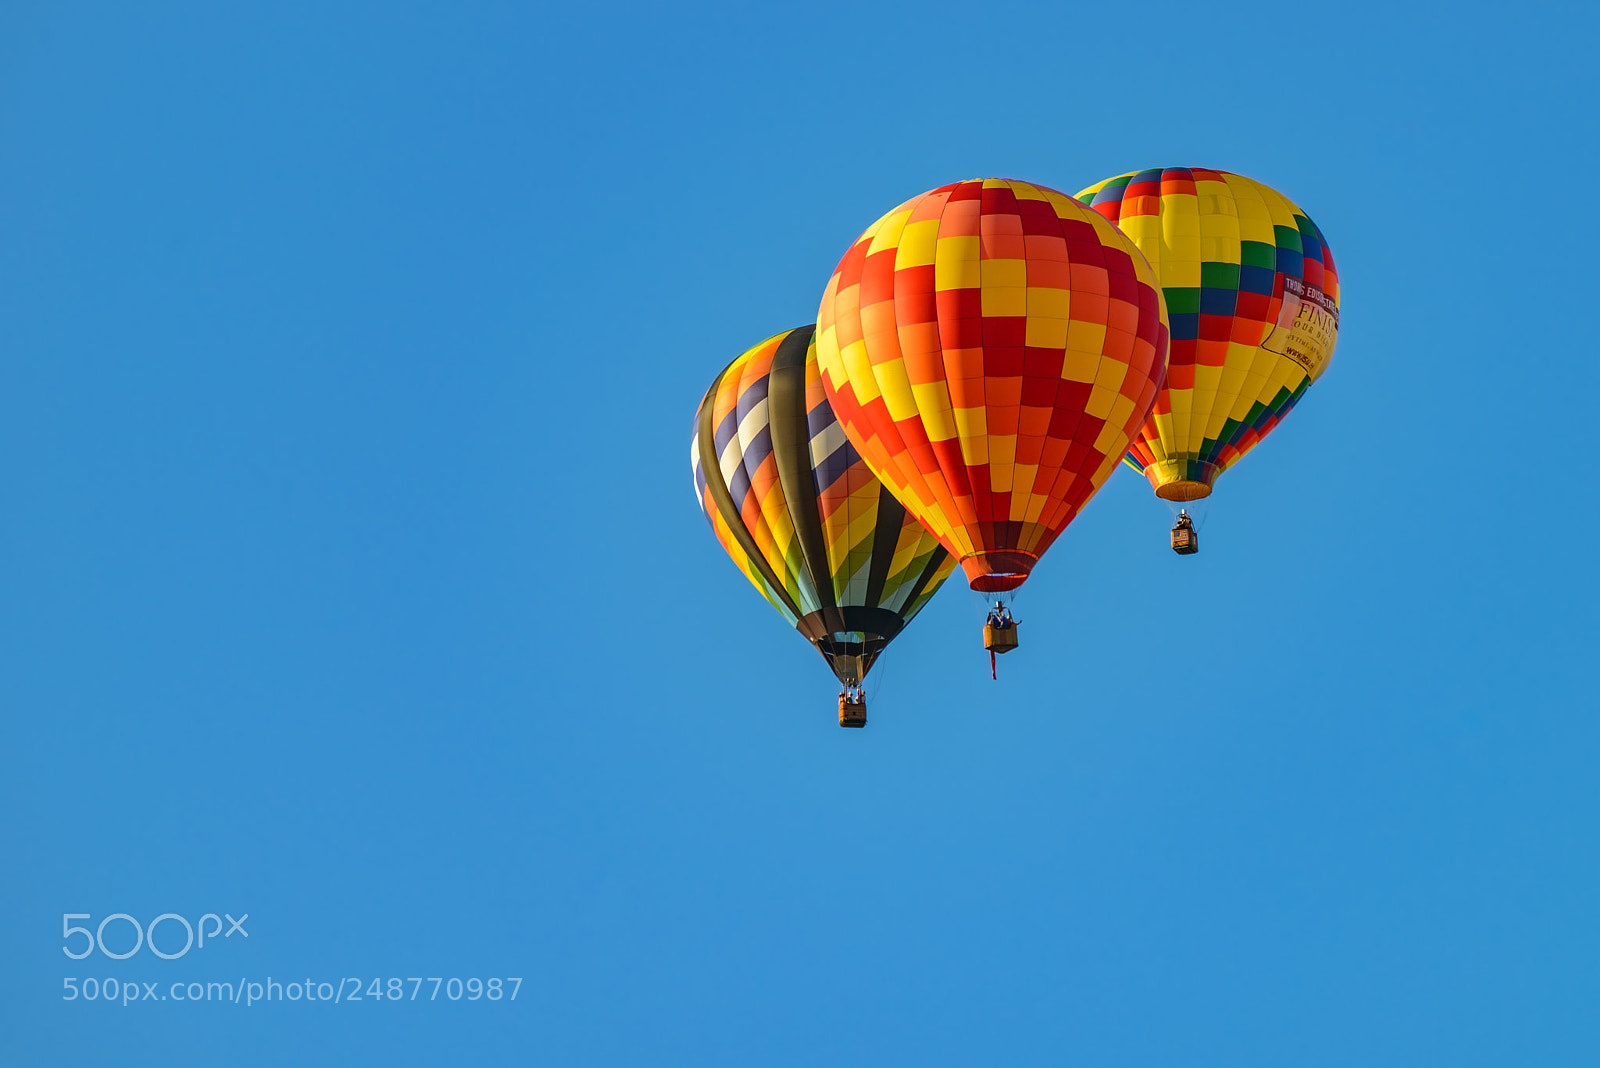 Nikon D800 sample photo. Colorful hot air balloons photography